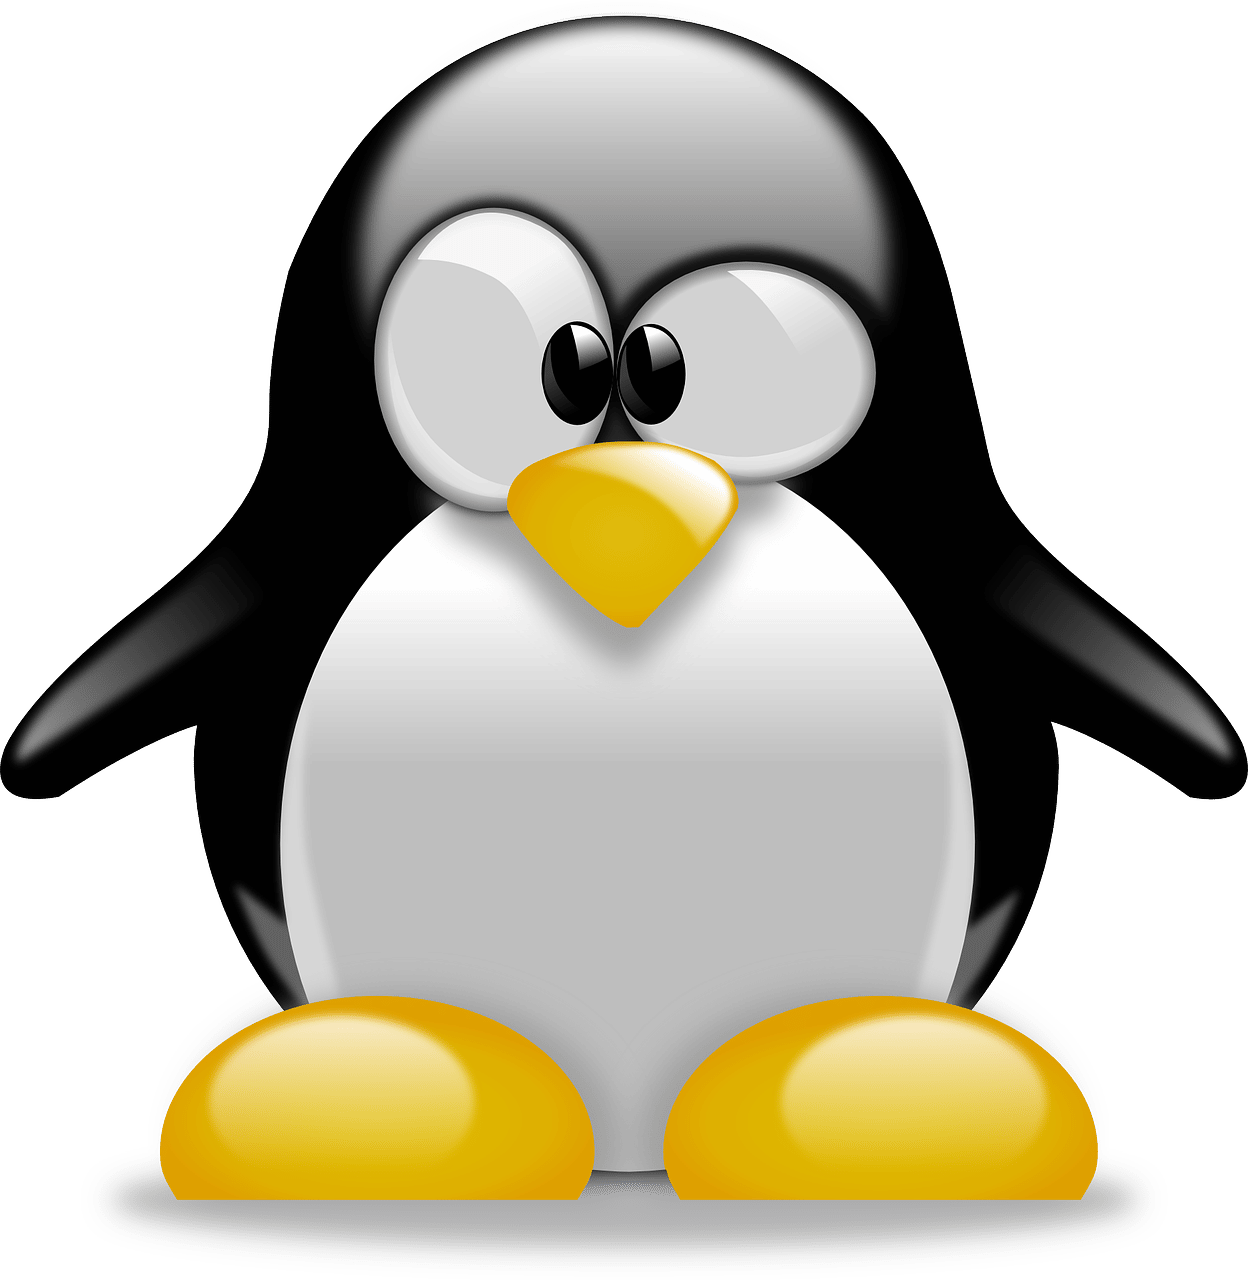 Les 8 meilleures distributions Linux éducatives pour les enfants, les enseignants et les écoles